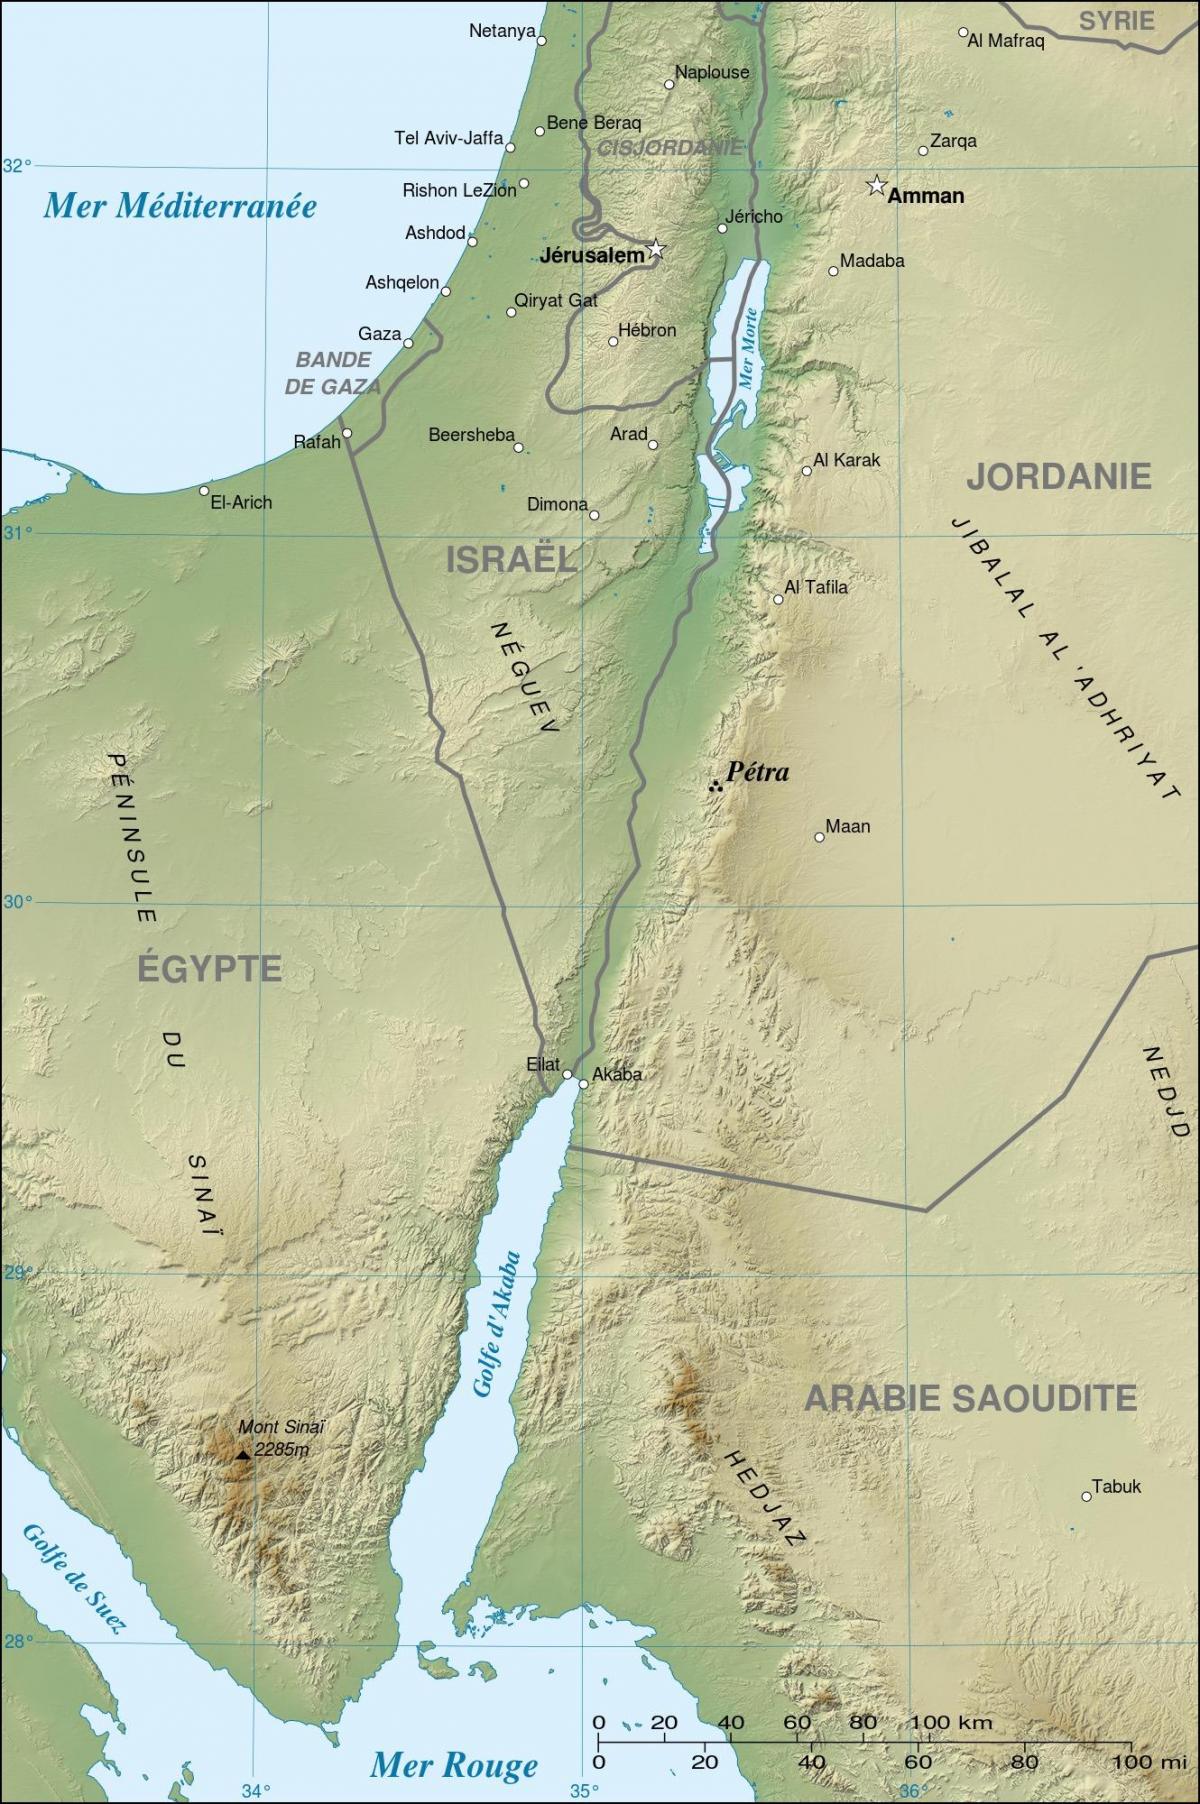 mapa do Jordão, mostrando petra